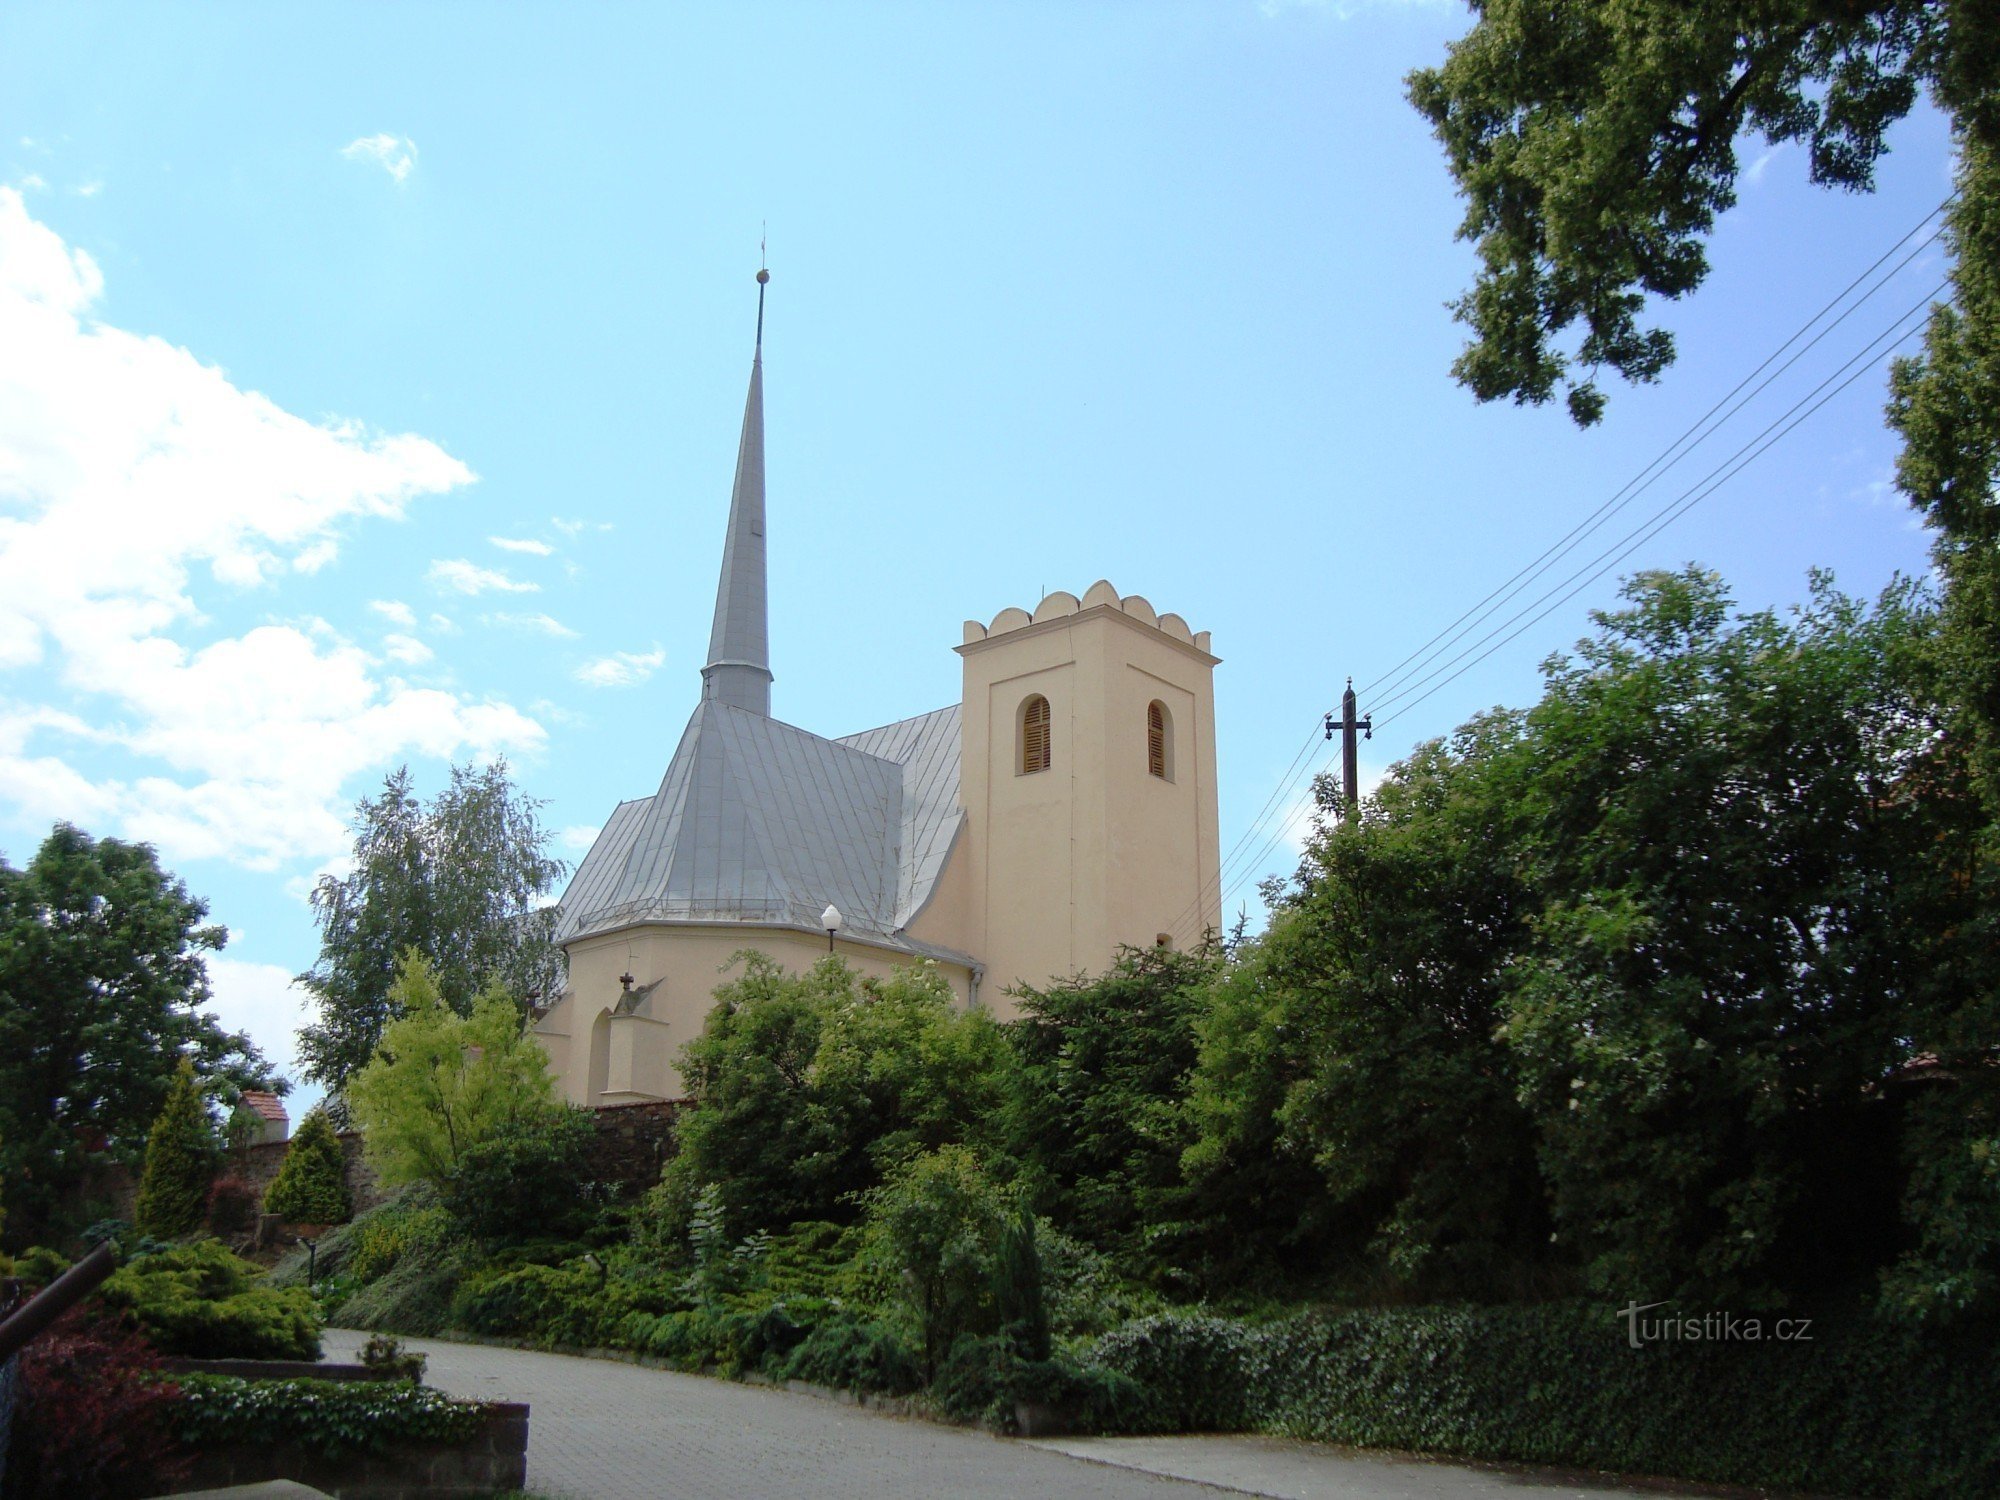 Slavonín - église paroissiale Saint-André - Photo : Ulrych Mir.